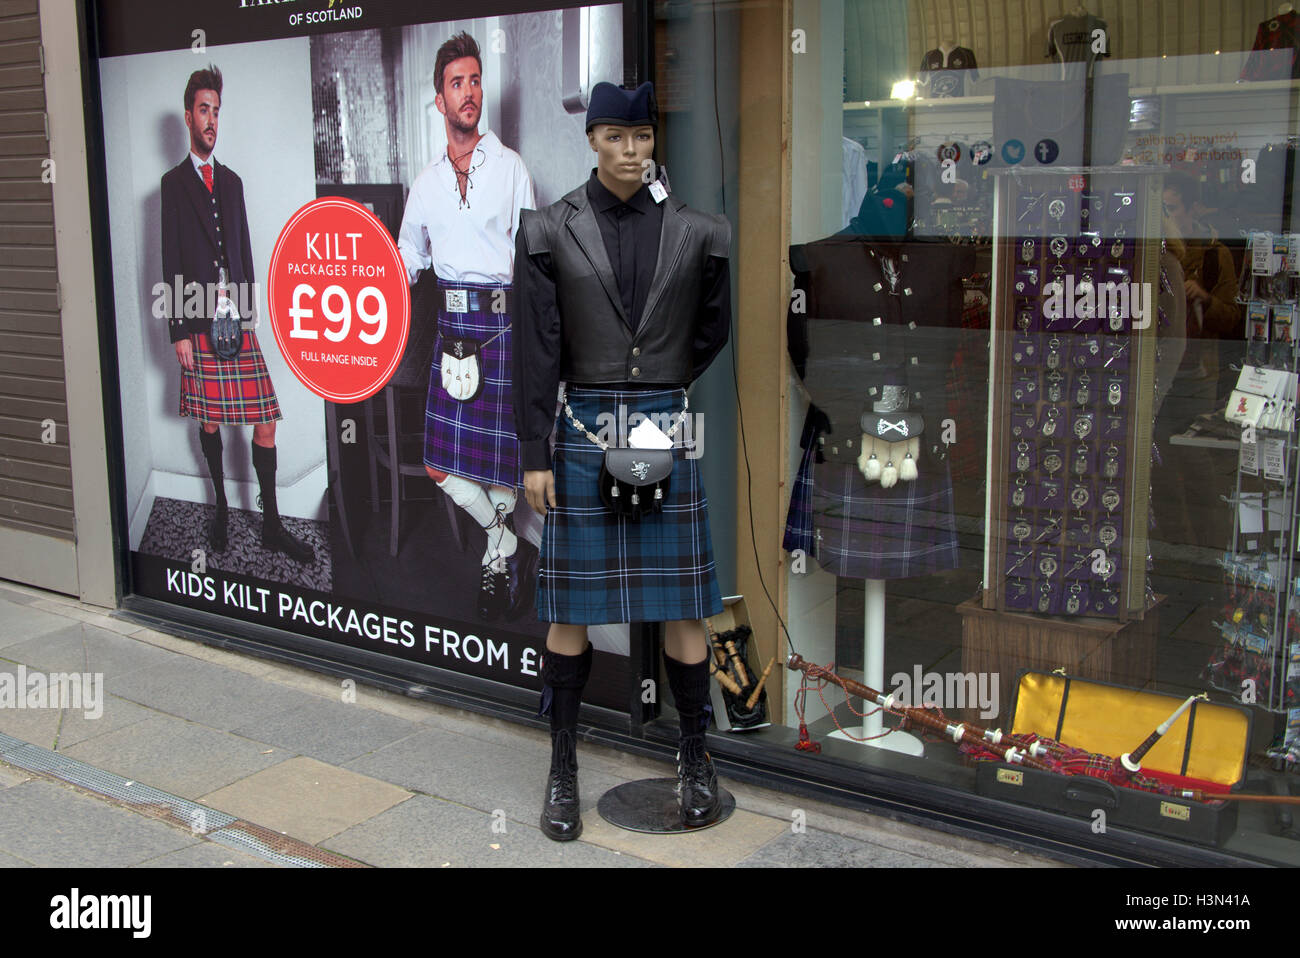 Touristiques de Glasgow en déplacement le citykilt mannequin costume Banque D'Images